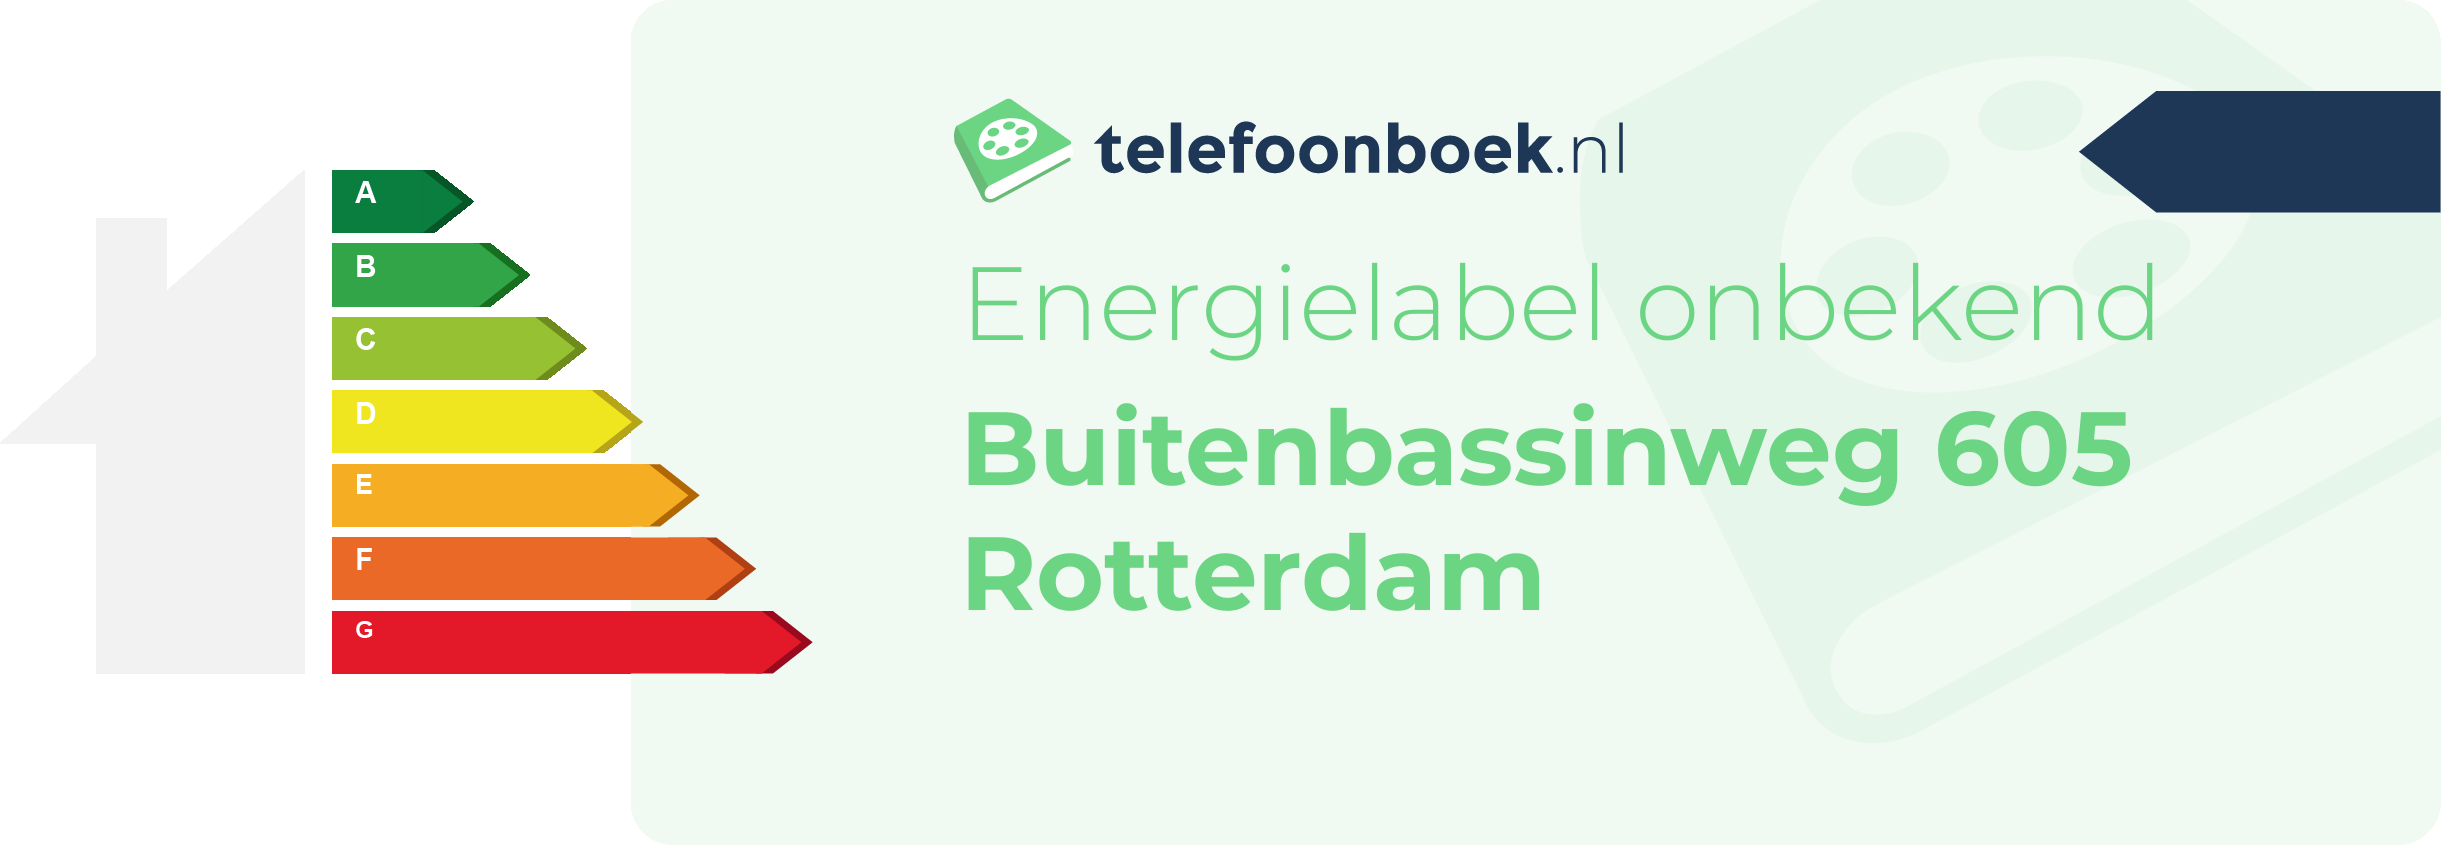 Energielabel Buitenbassinweg 605 Rotterdam